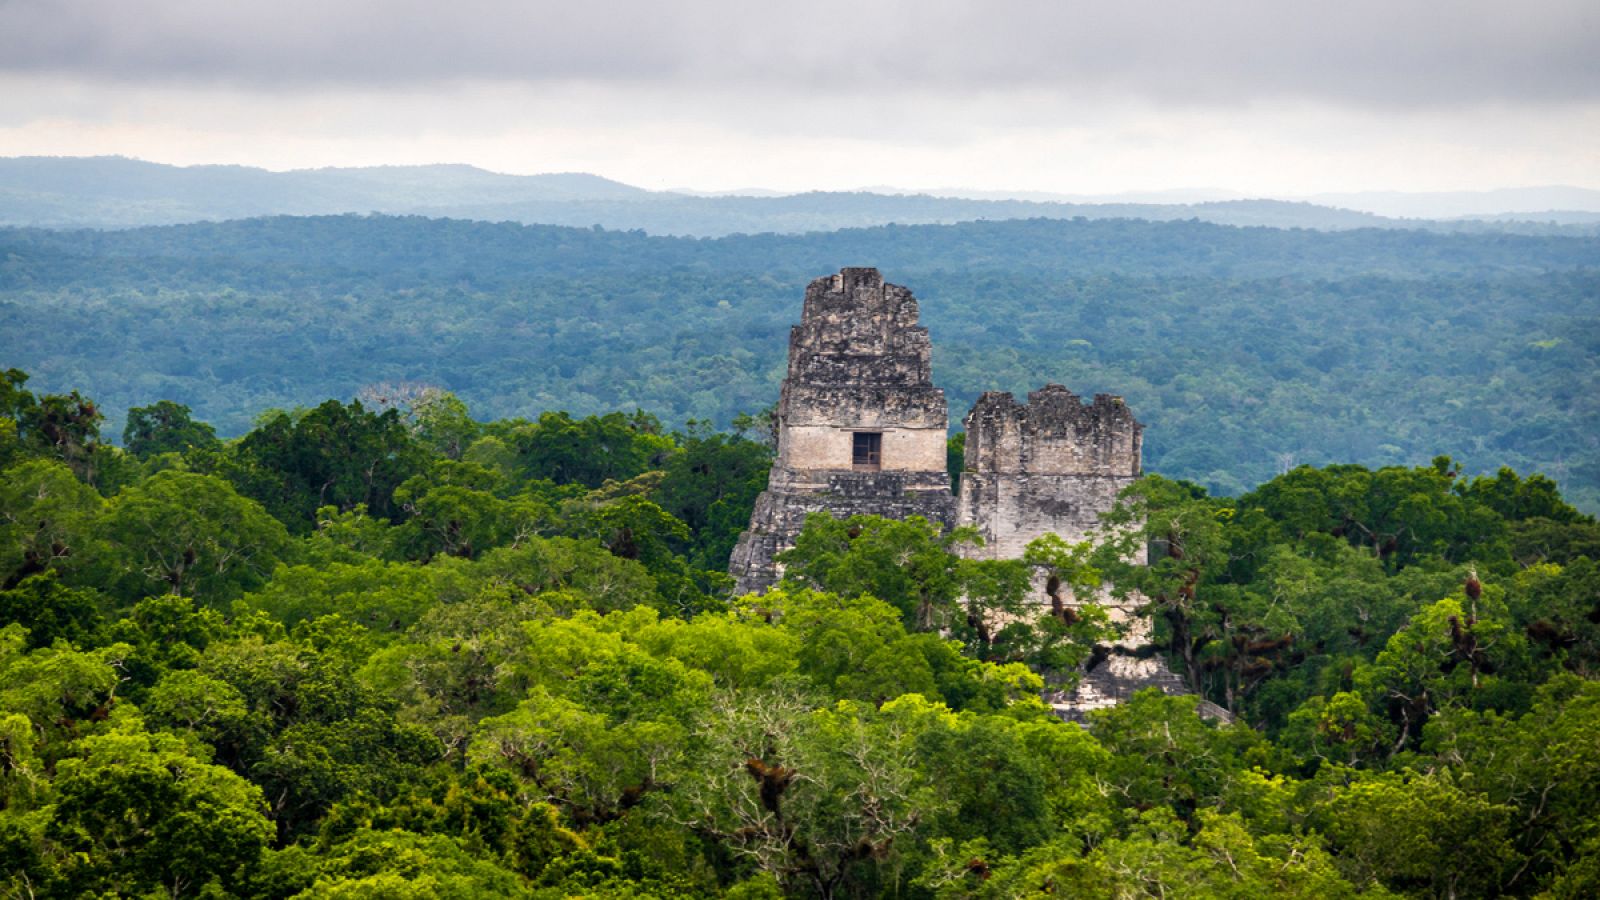 Se cree que la tala de bosques es uno de los factores que influyeron en la desaparición de la cultura maya.